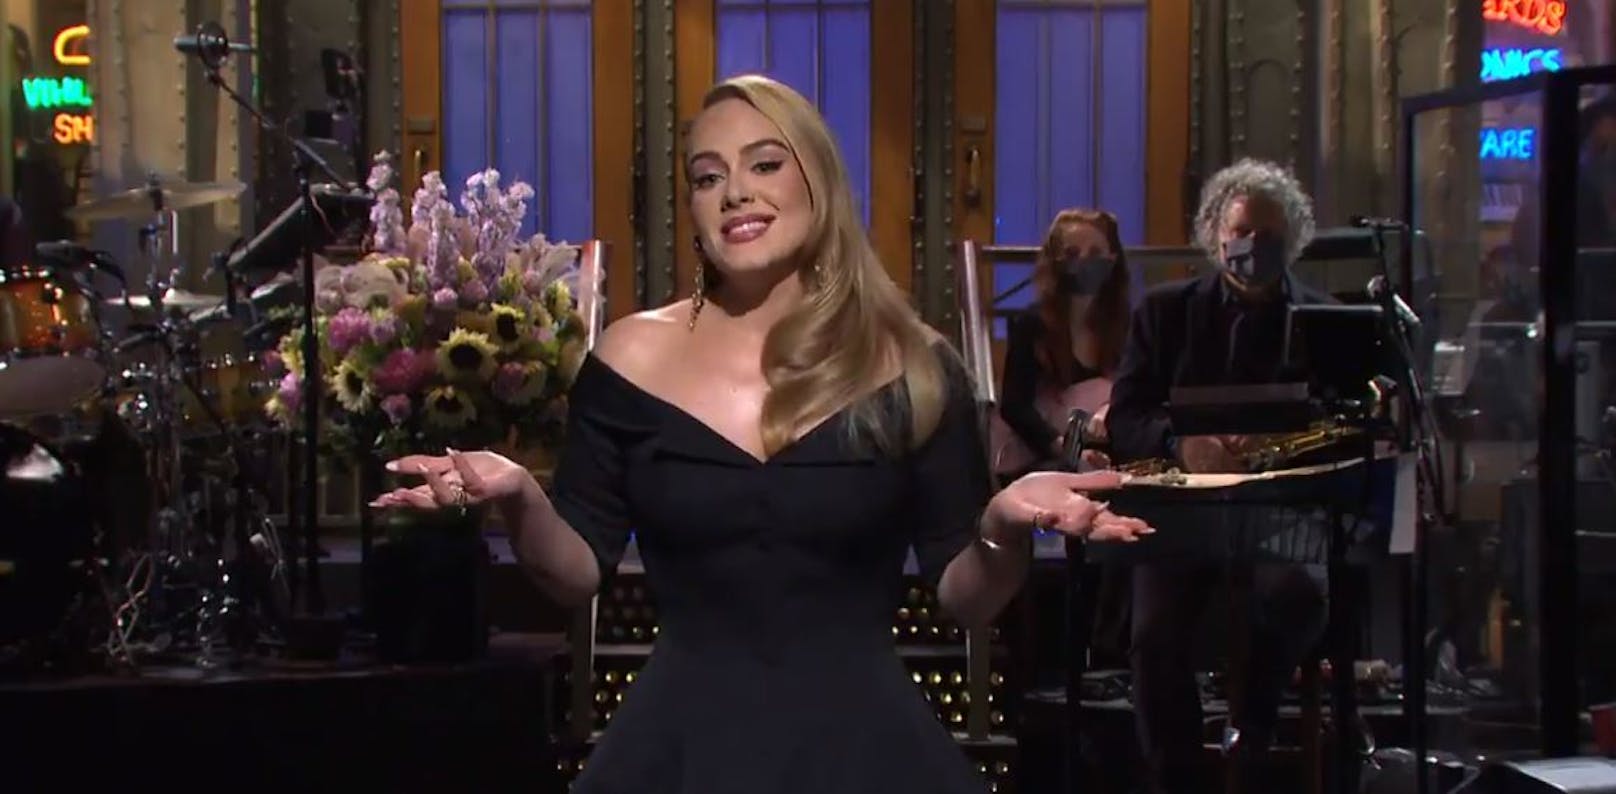 Sängerin <strong>Adele</strong> moderierte nicht nur eine "Saturday Night Live"-Ausgabe, sondern präsentierte dabei auch ihre neue Top-Figur.